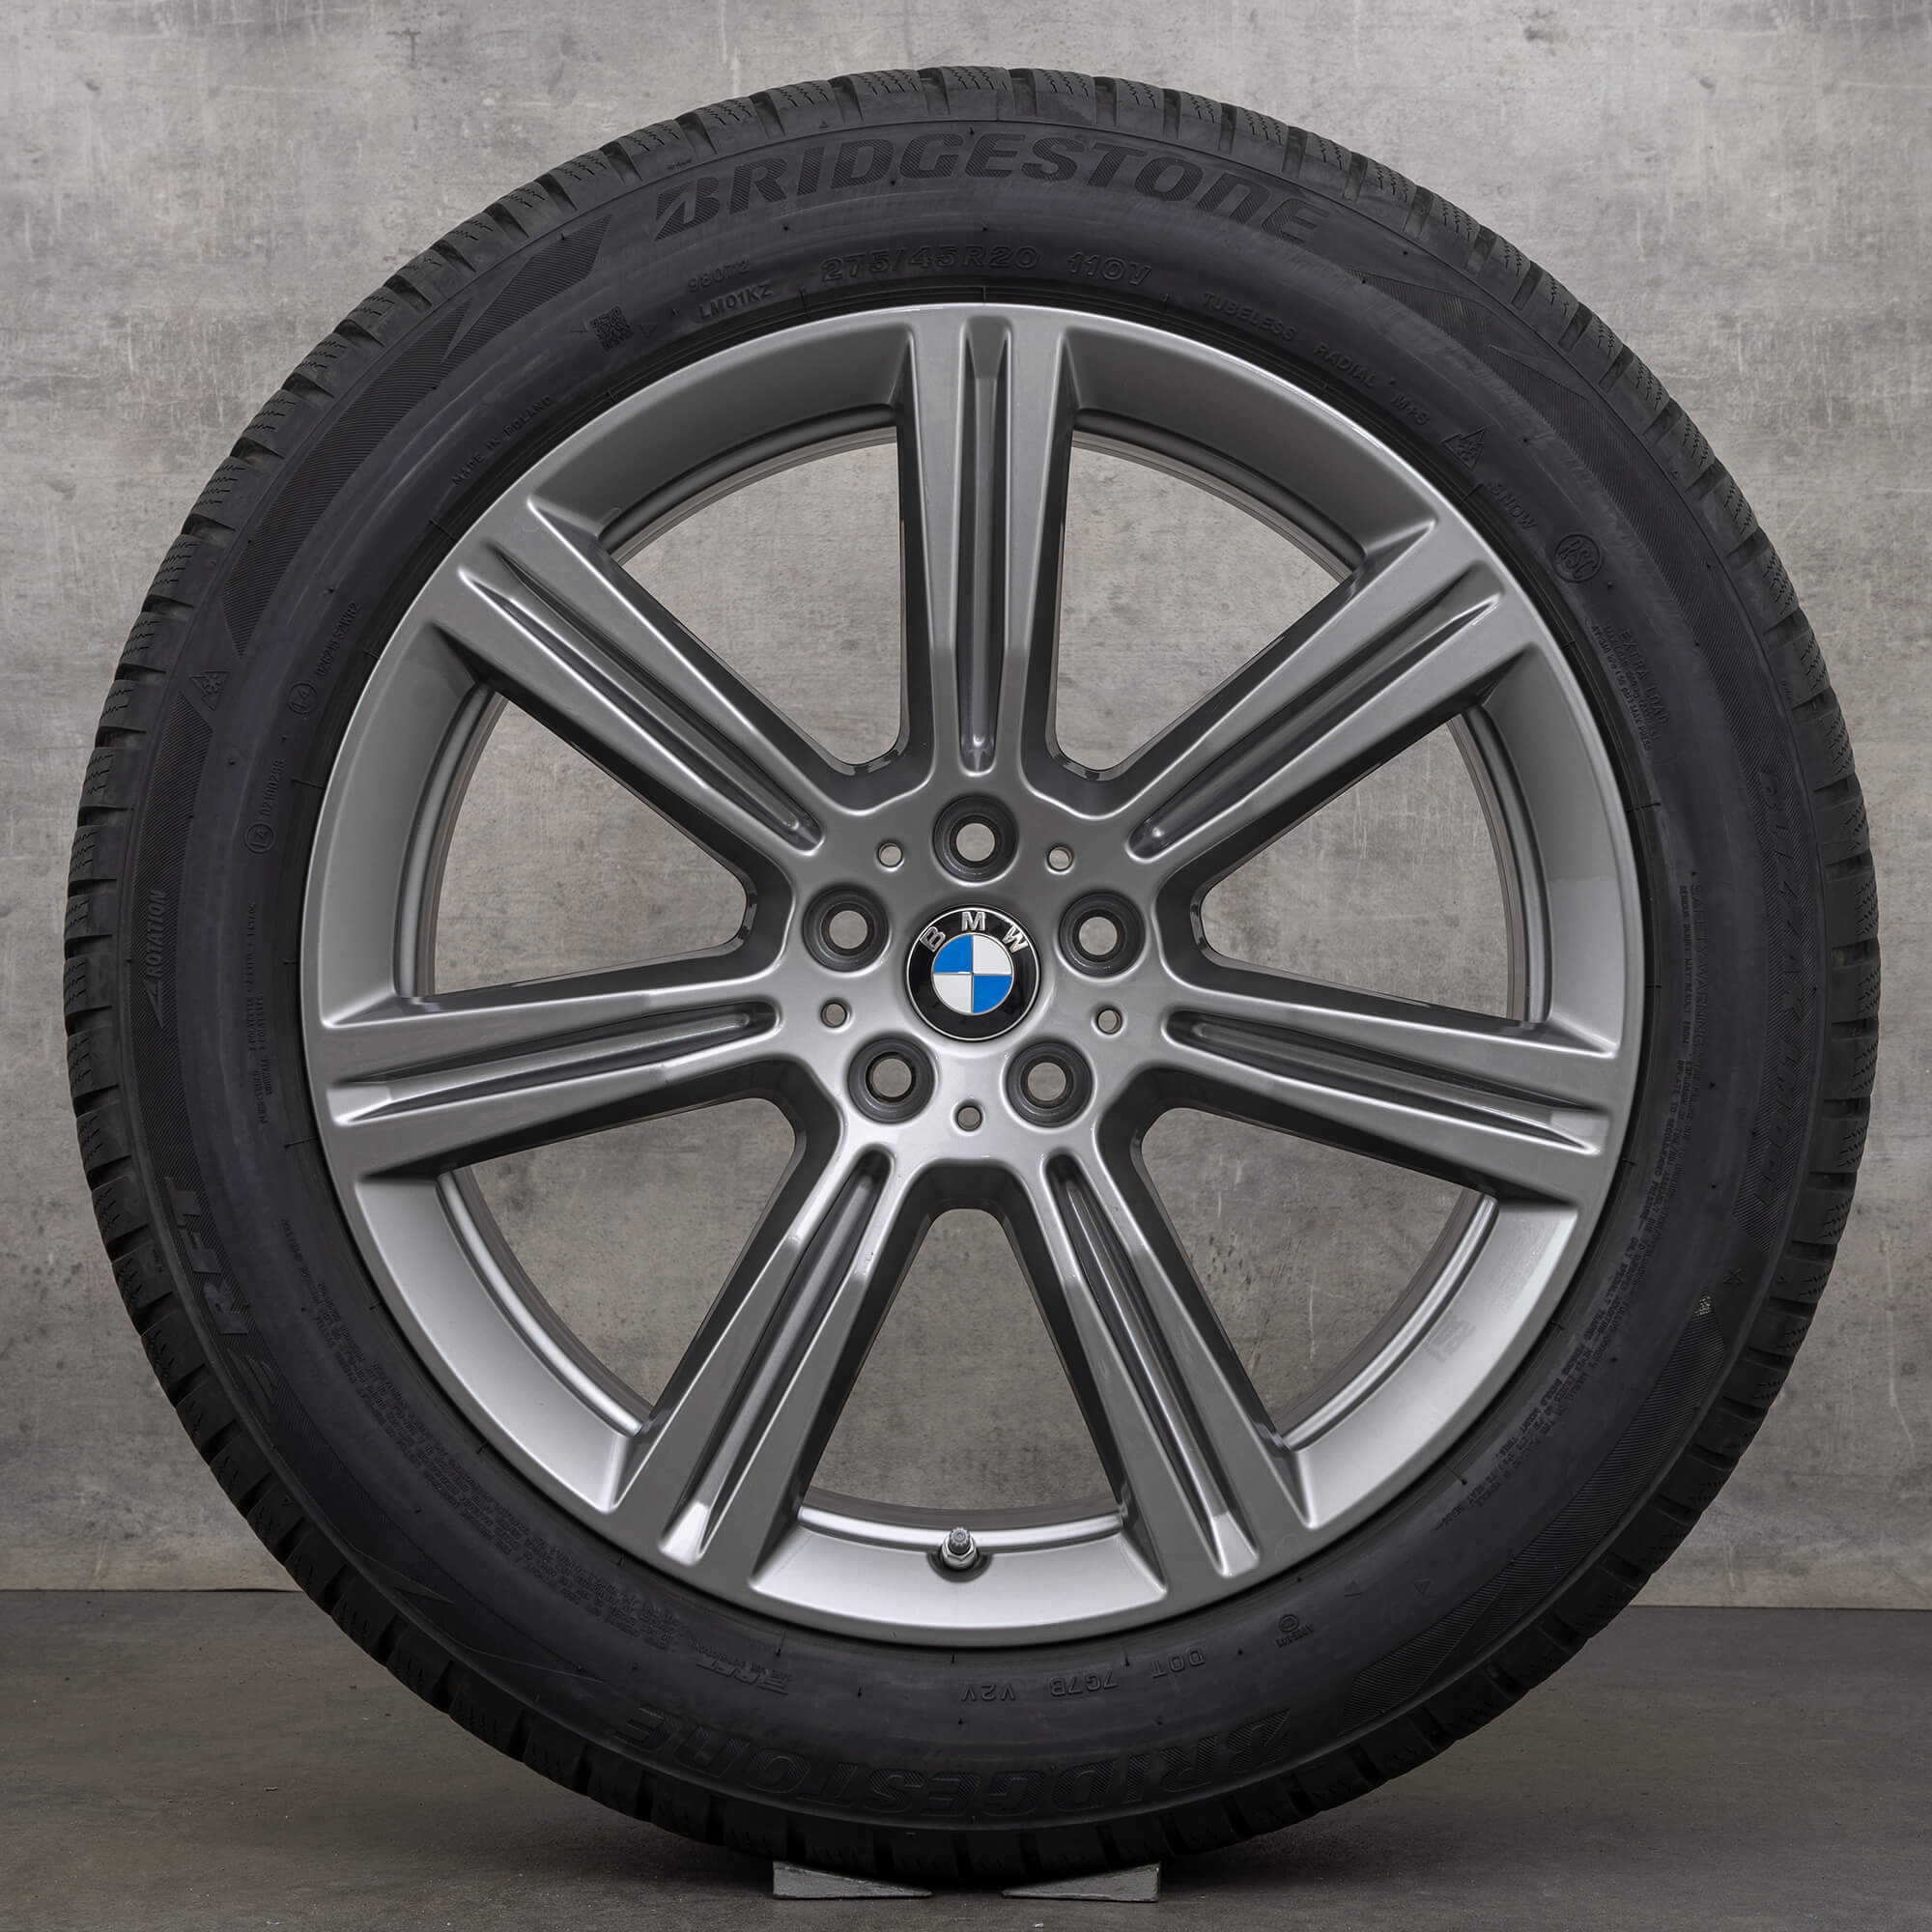 BMW X6 G06 X5 G05 rodas de inverno jantes 20 polegadas pneus 6883753 Styling 736